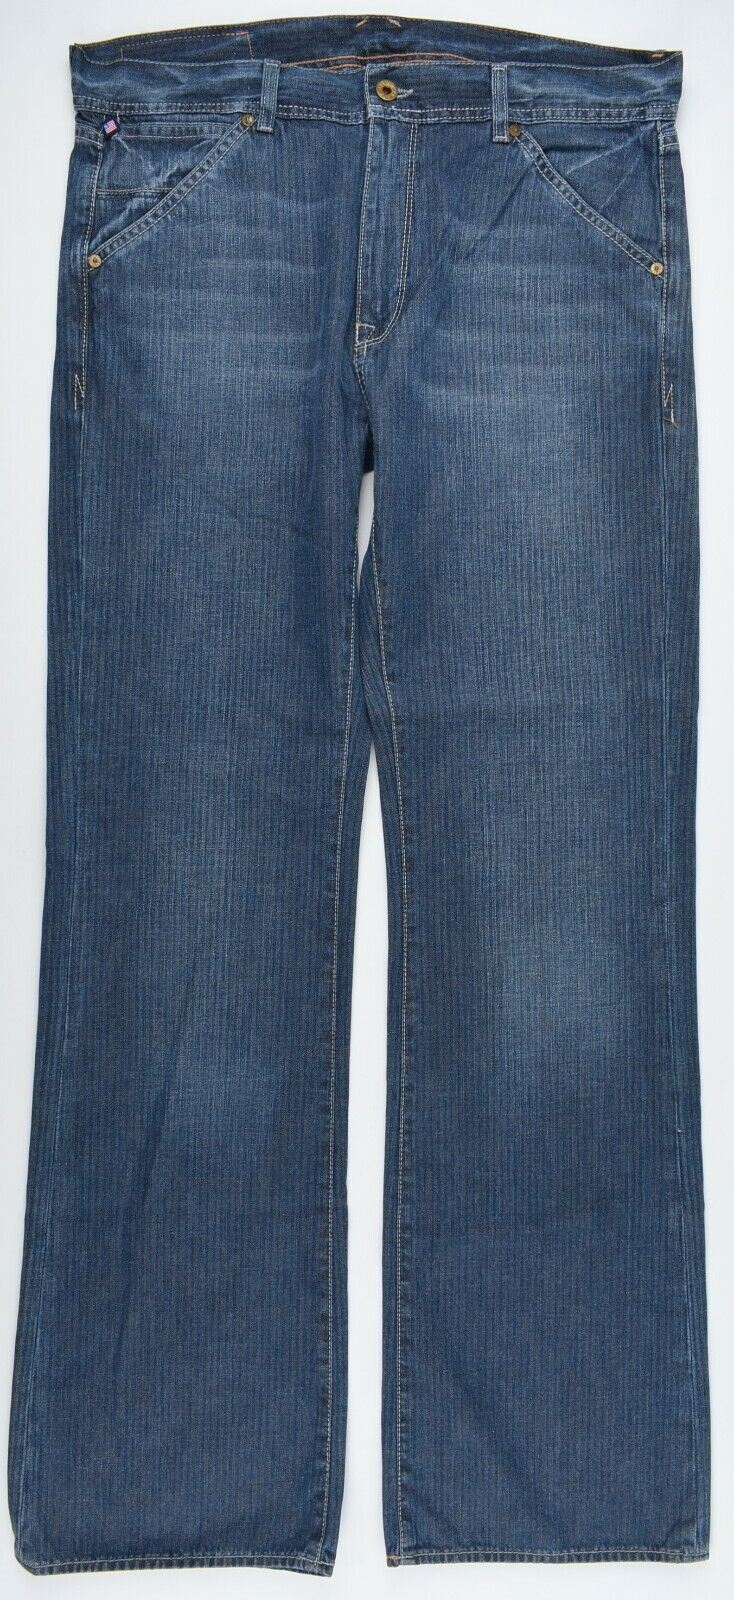 POLO RALPH LAUREN Men's COLTON Utility Jeans, Blue, size W33 L34